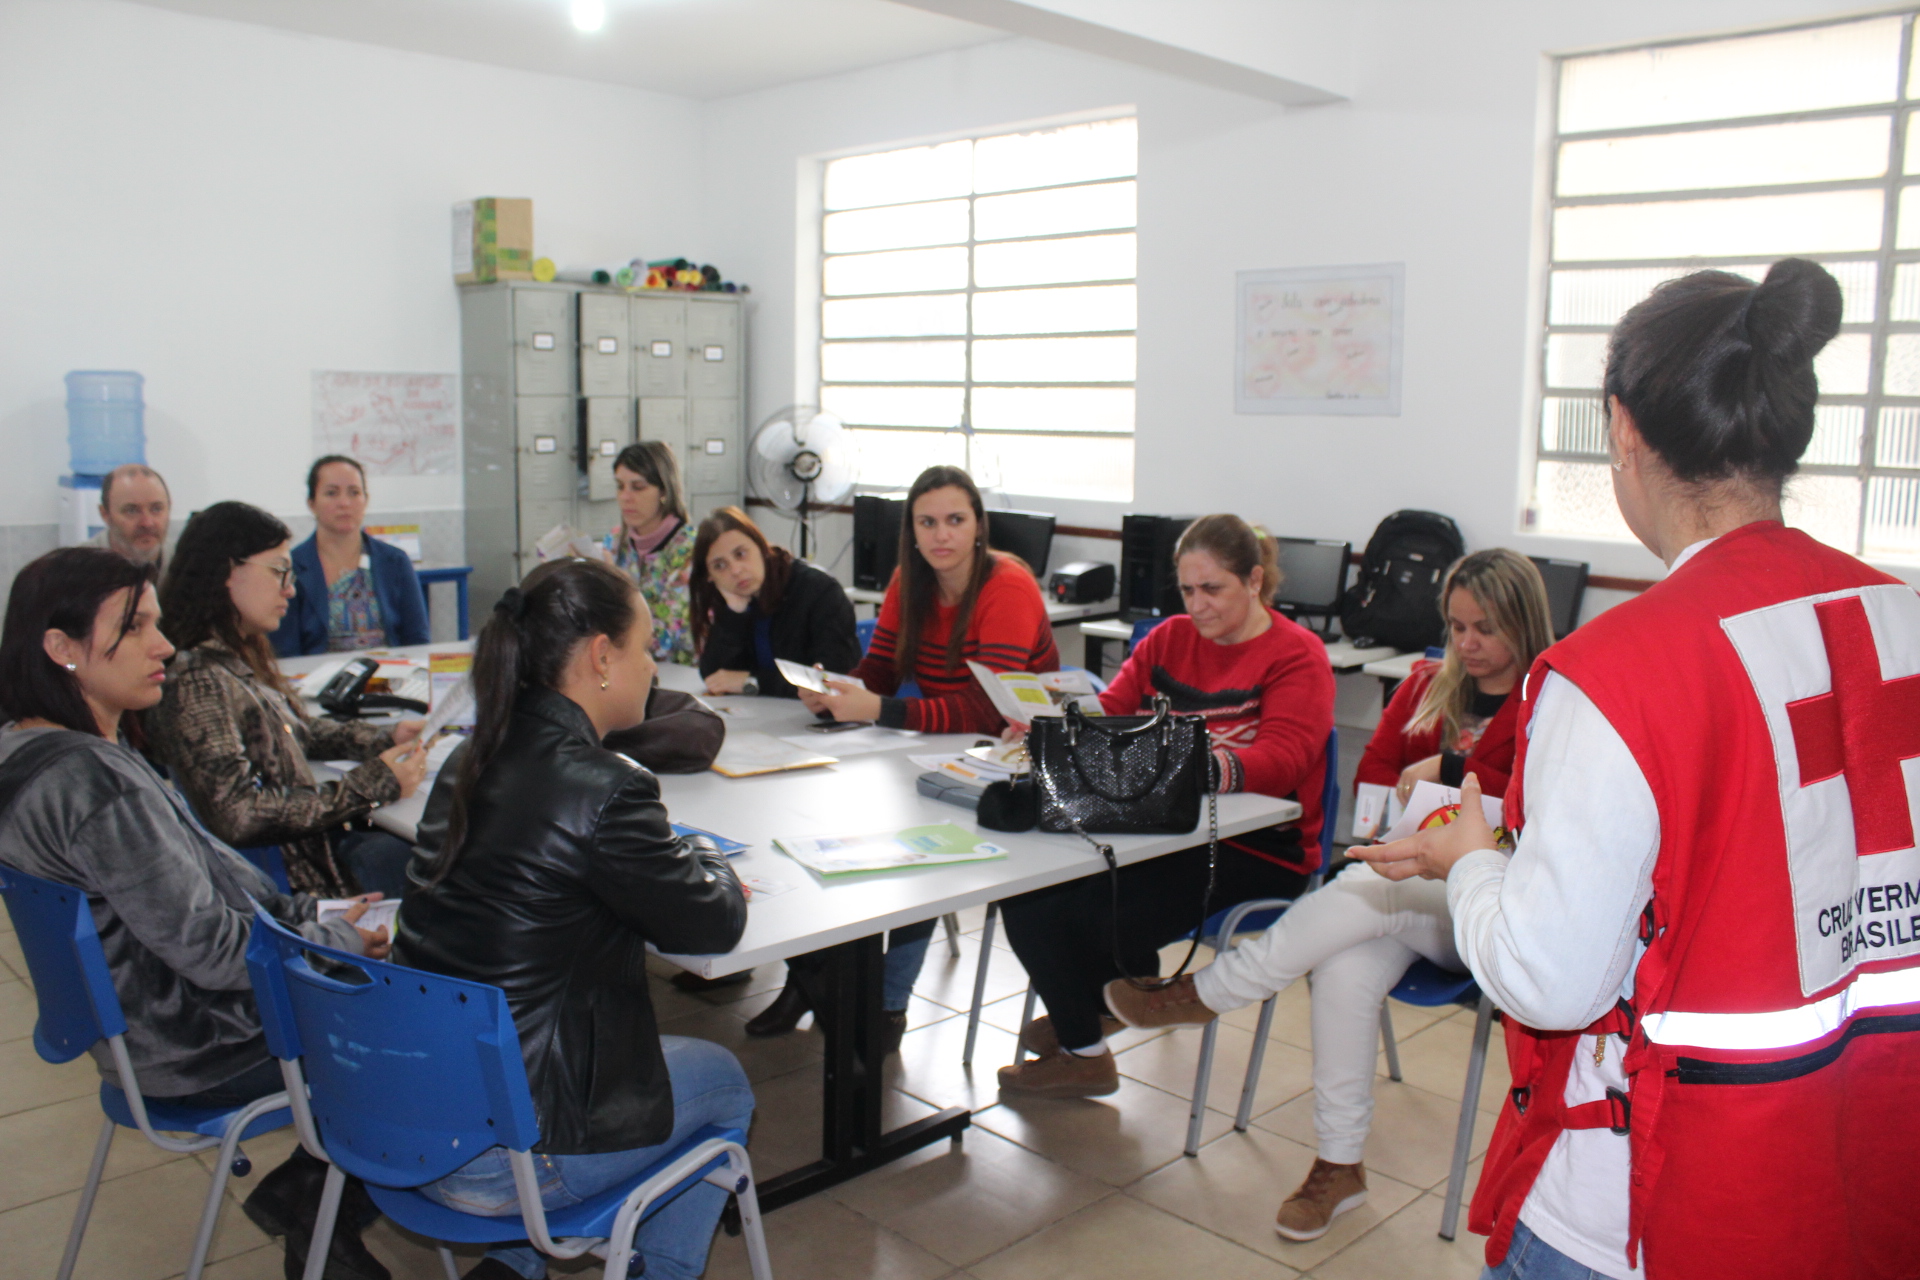 Cruz Vermelha Brasileira prossegue no combate à febre amarela com atividades em escola no Espírito Santo (5)